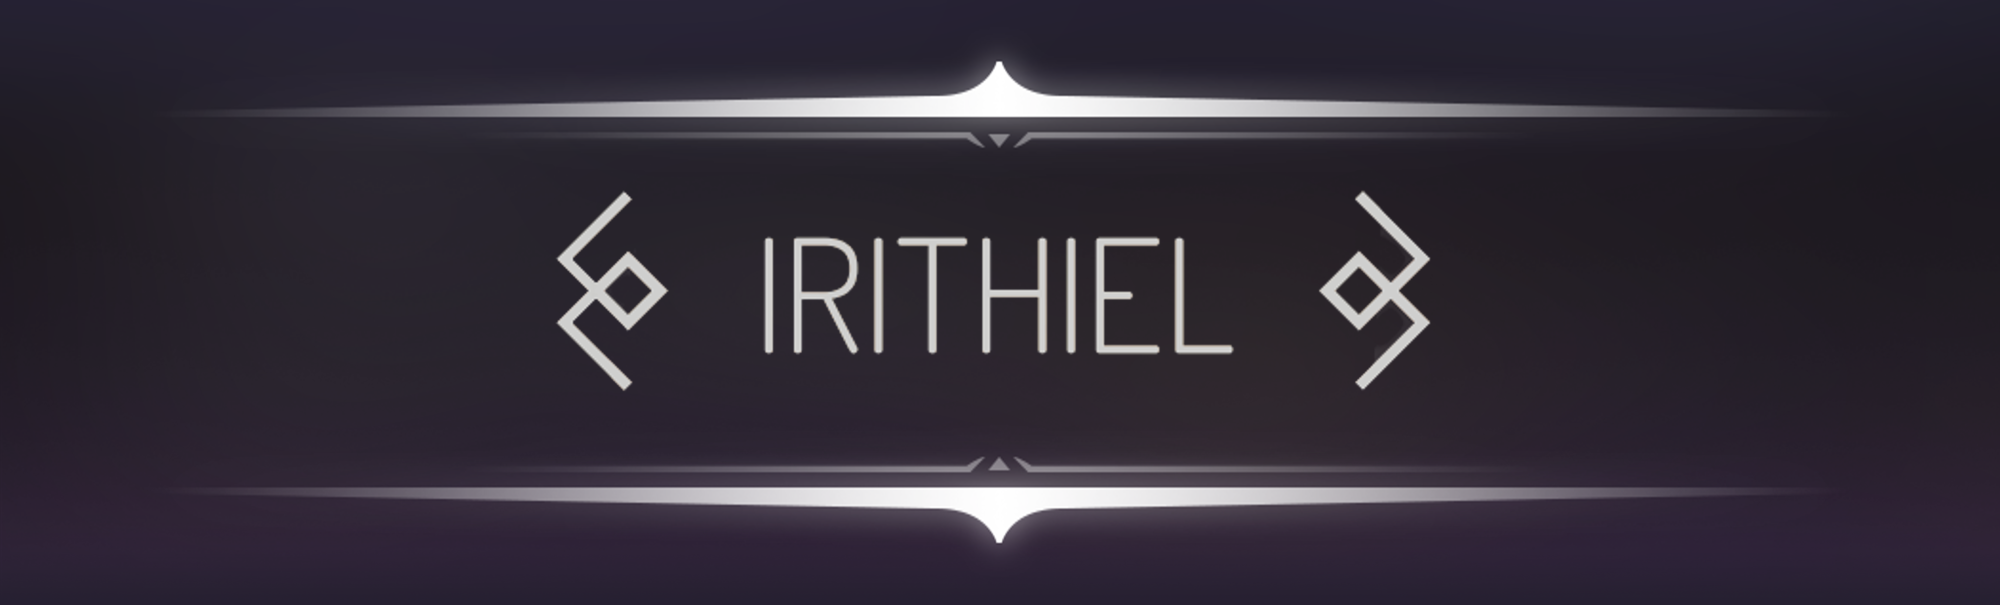 Irithiel